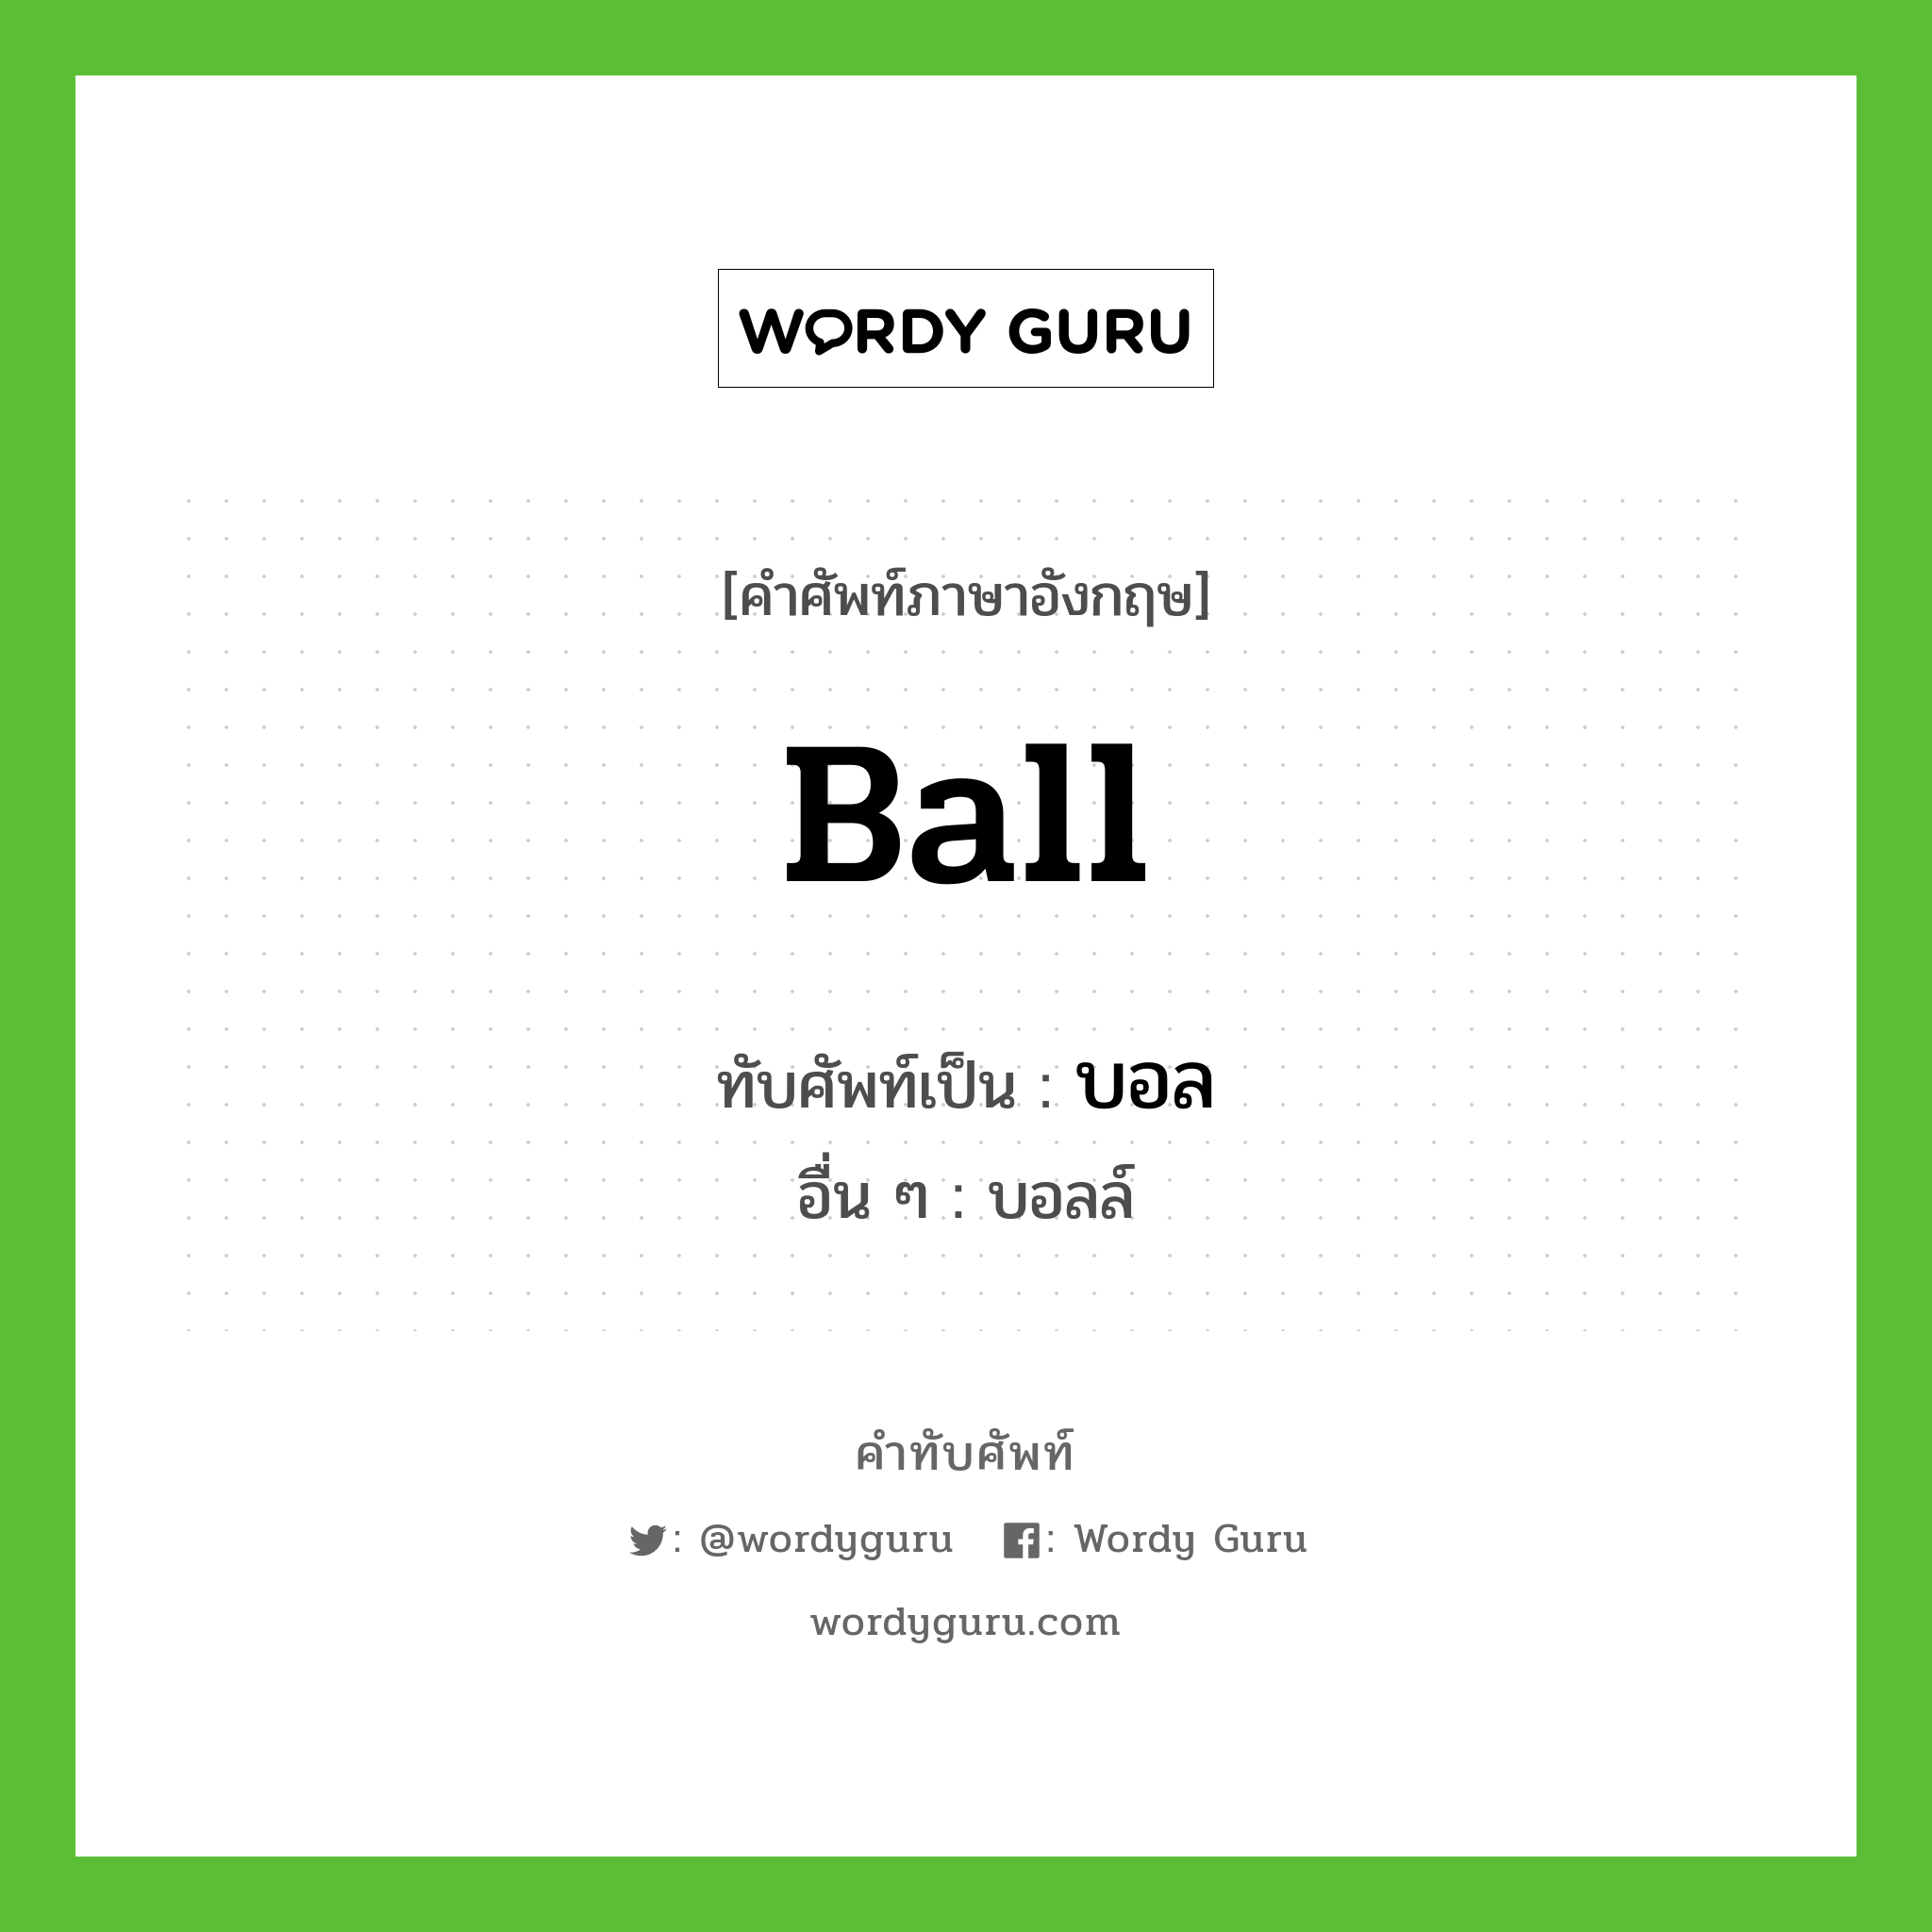 บอล เขียนอย่างไร?, คำศัพท์ภาษาอังกฤษ บอล ทับศัพท์เป็น ball อื่น ๆ บอลล์